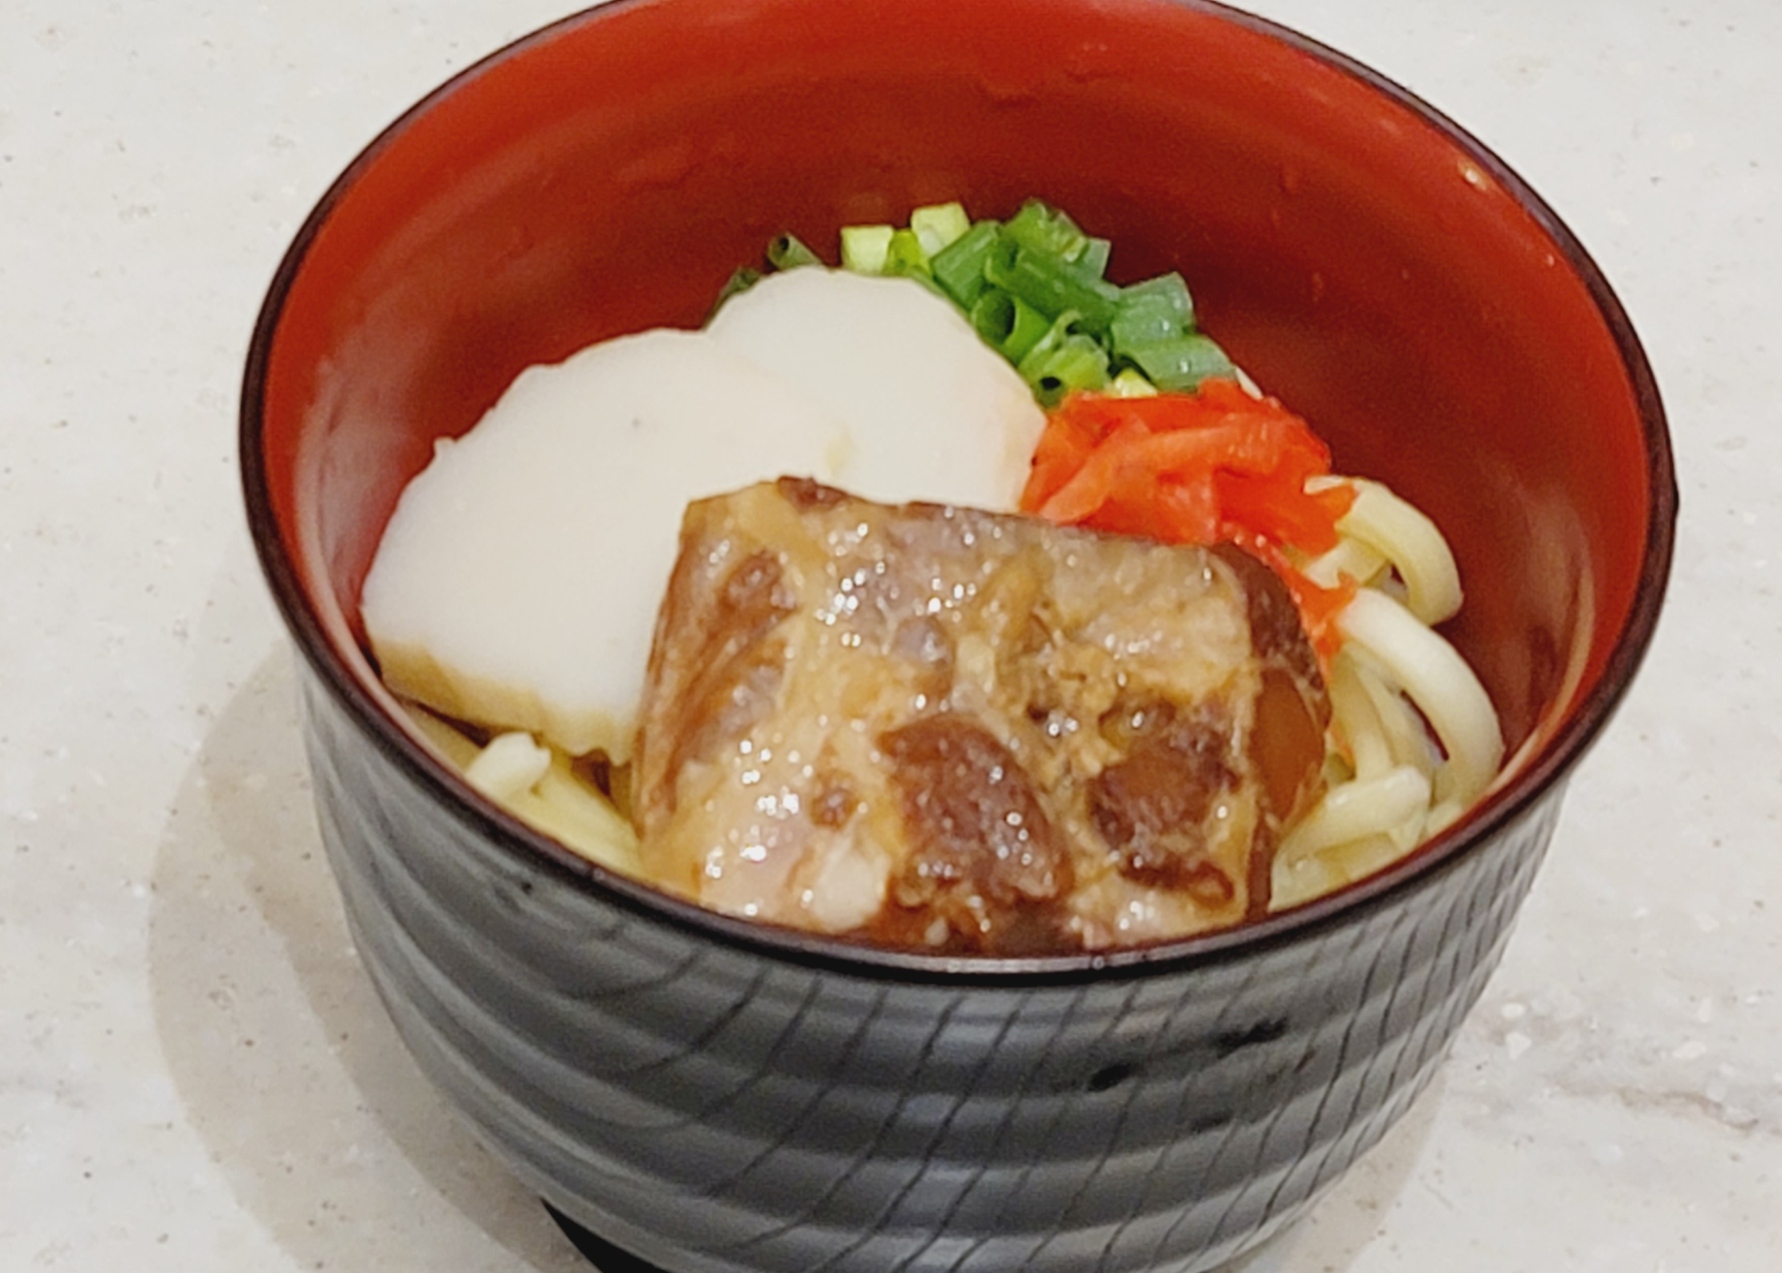 【沖縄そば】<br>そば粉ではなく,小麦粉を使った太めの麺と、豚骨とかつお節からとるブレンドのだしで仕上げたスープが特徴。<br>紅ショウガなどトッピングはお好みで♪